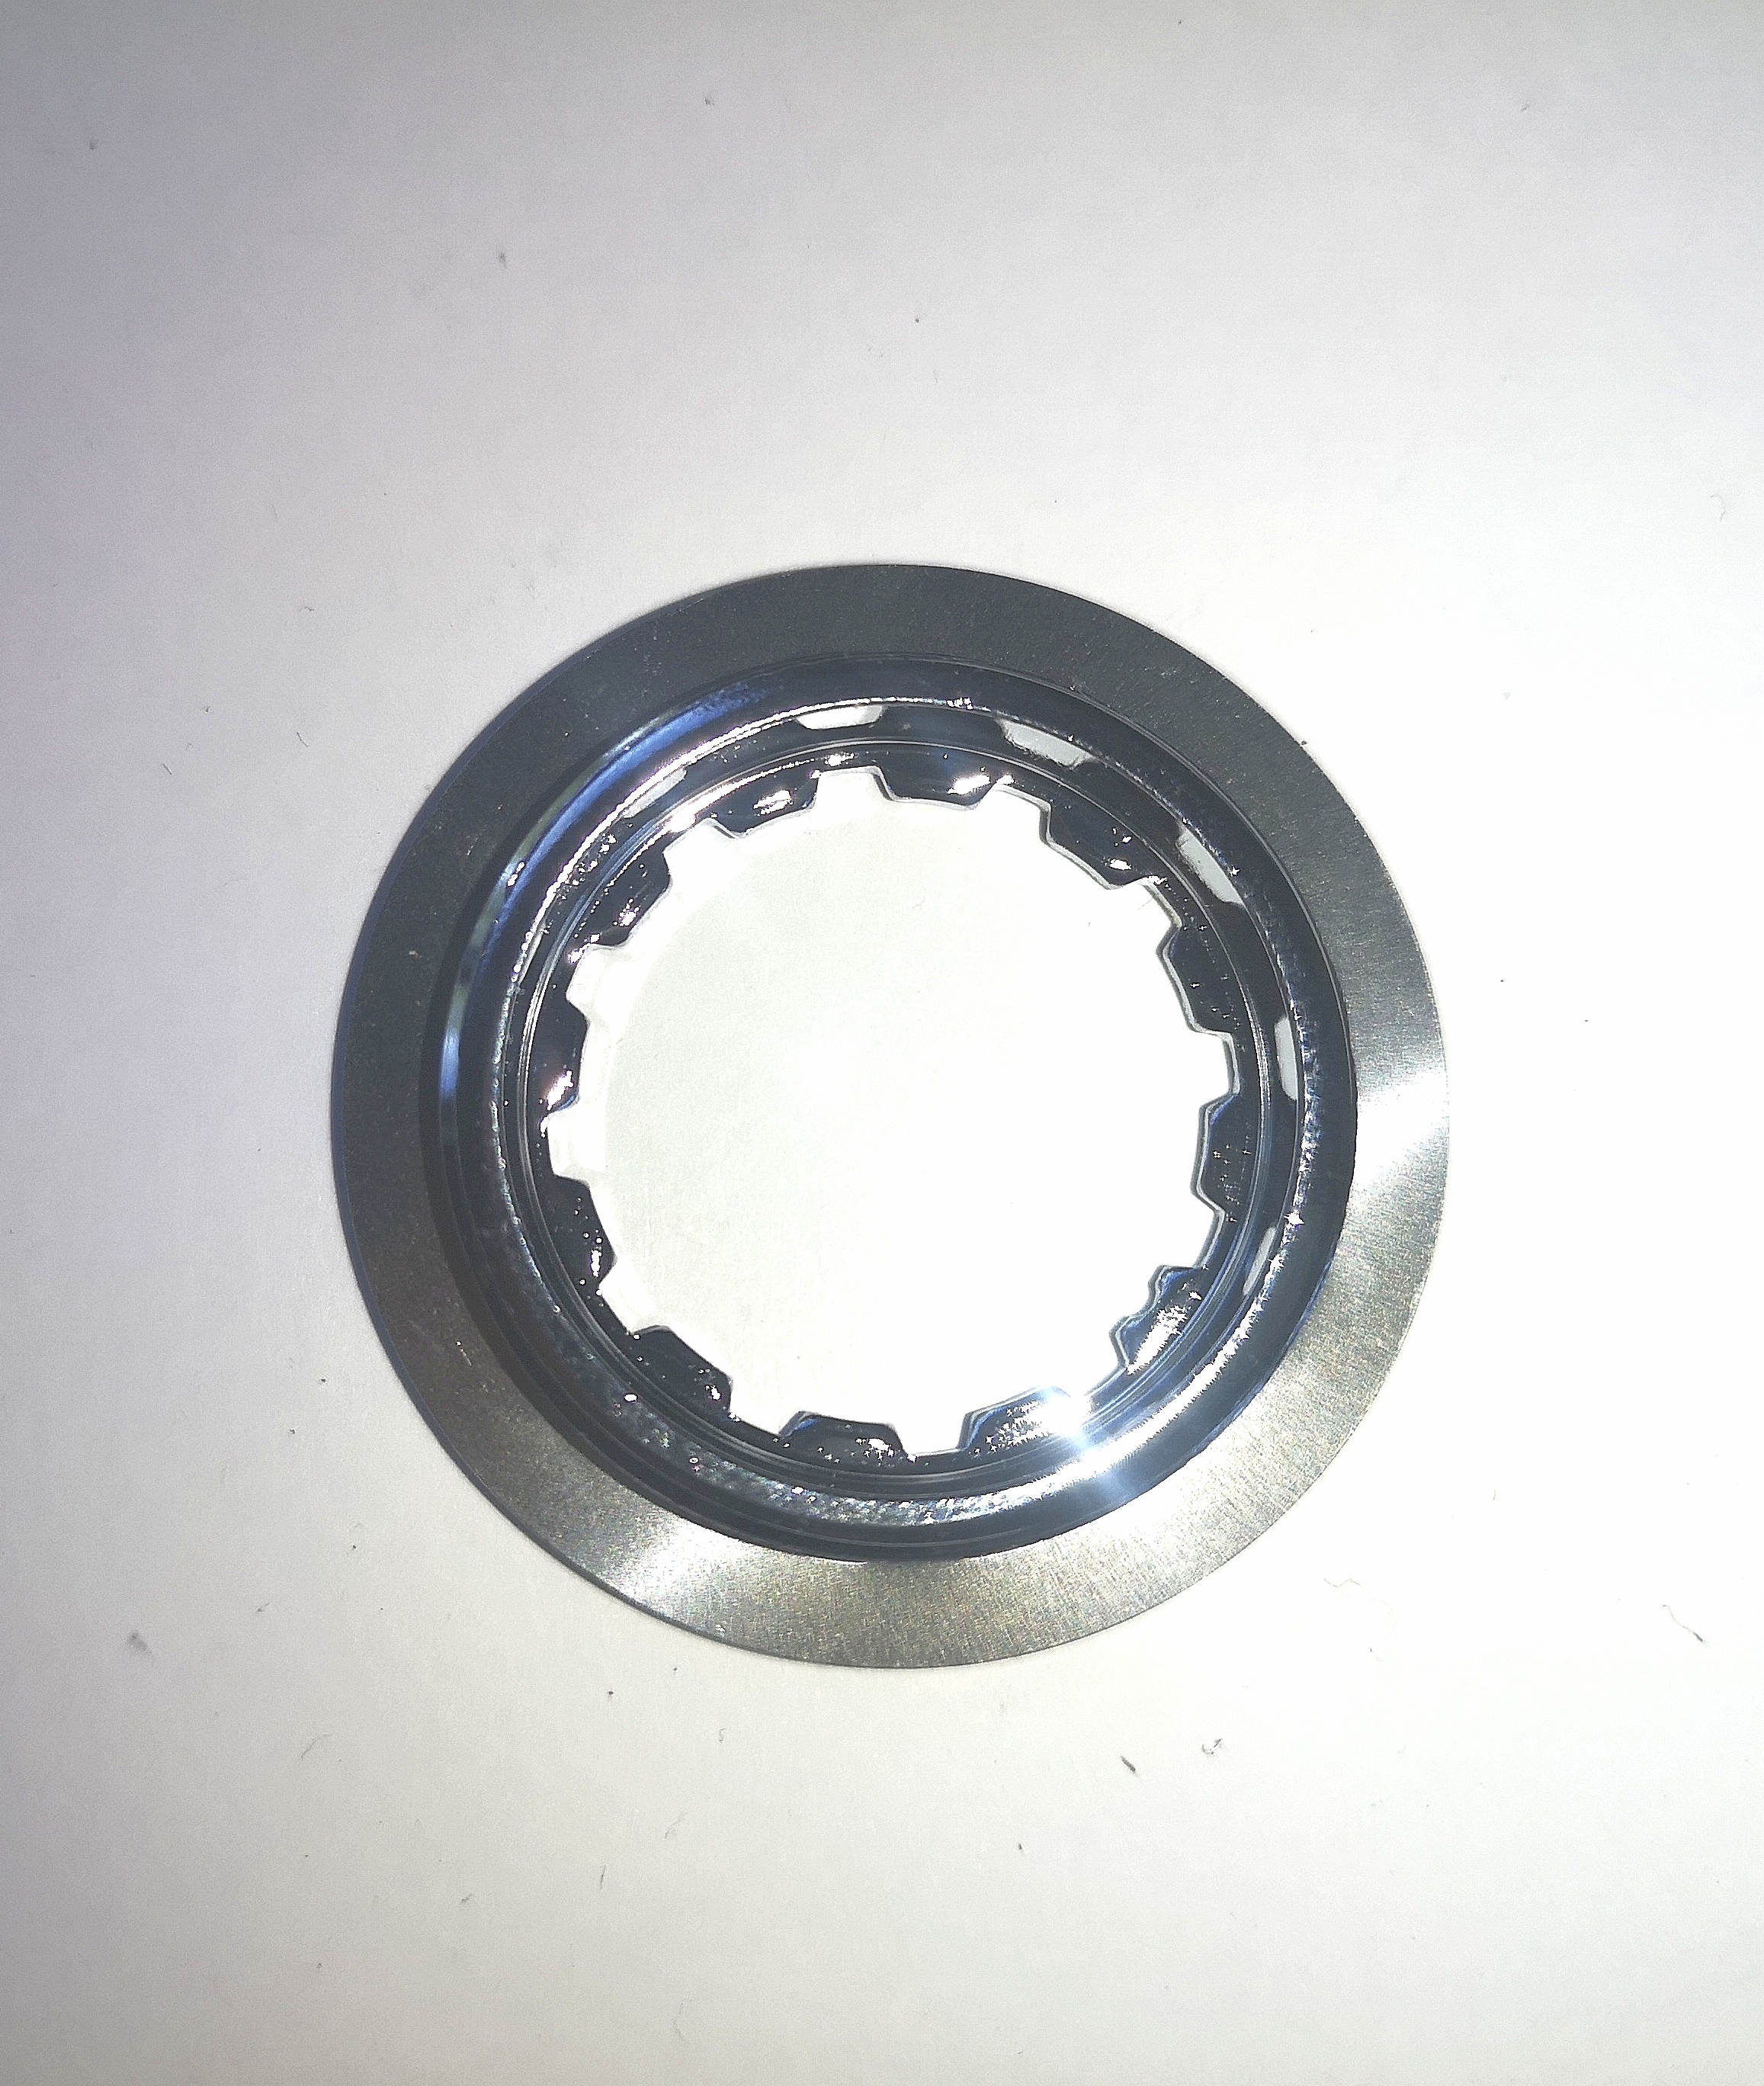 Shimano Lock Ring for Ultegra CS-6500 Hyperglide Cassette, 12T